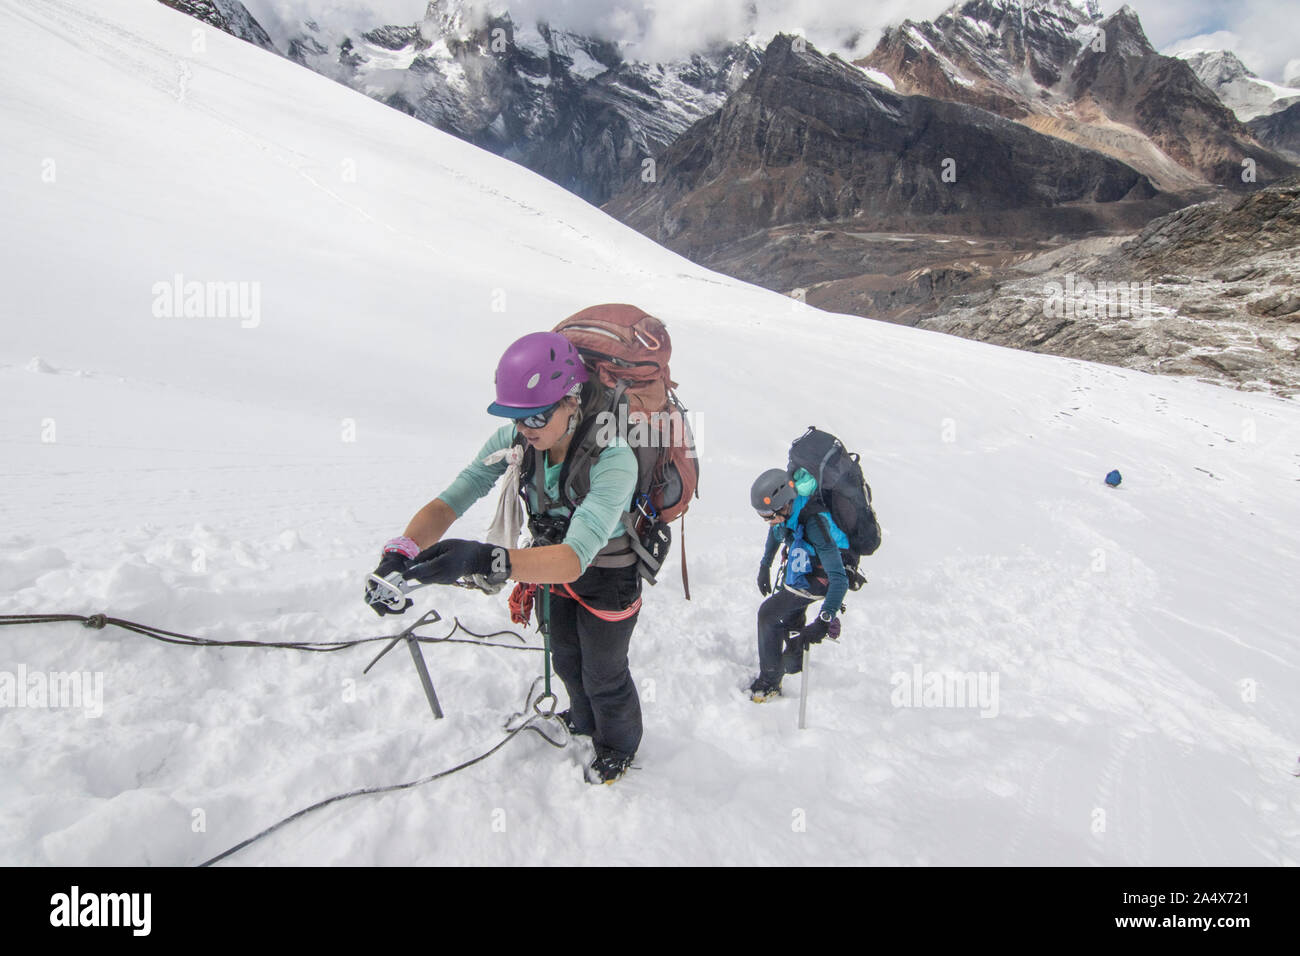 Mera Peak Trek and Climb Nepal Stock Photo